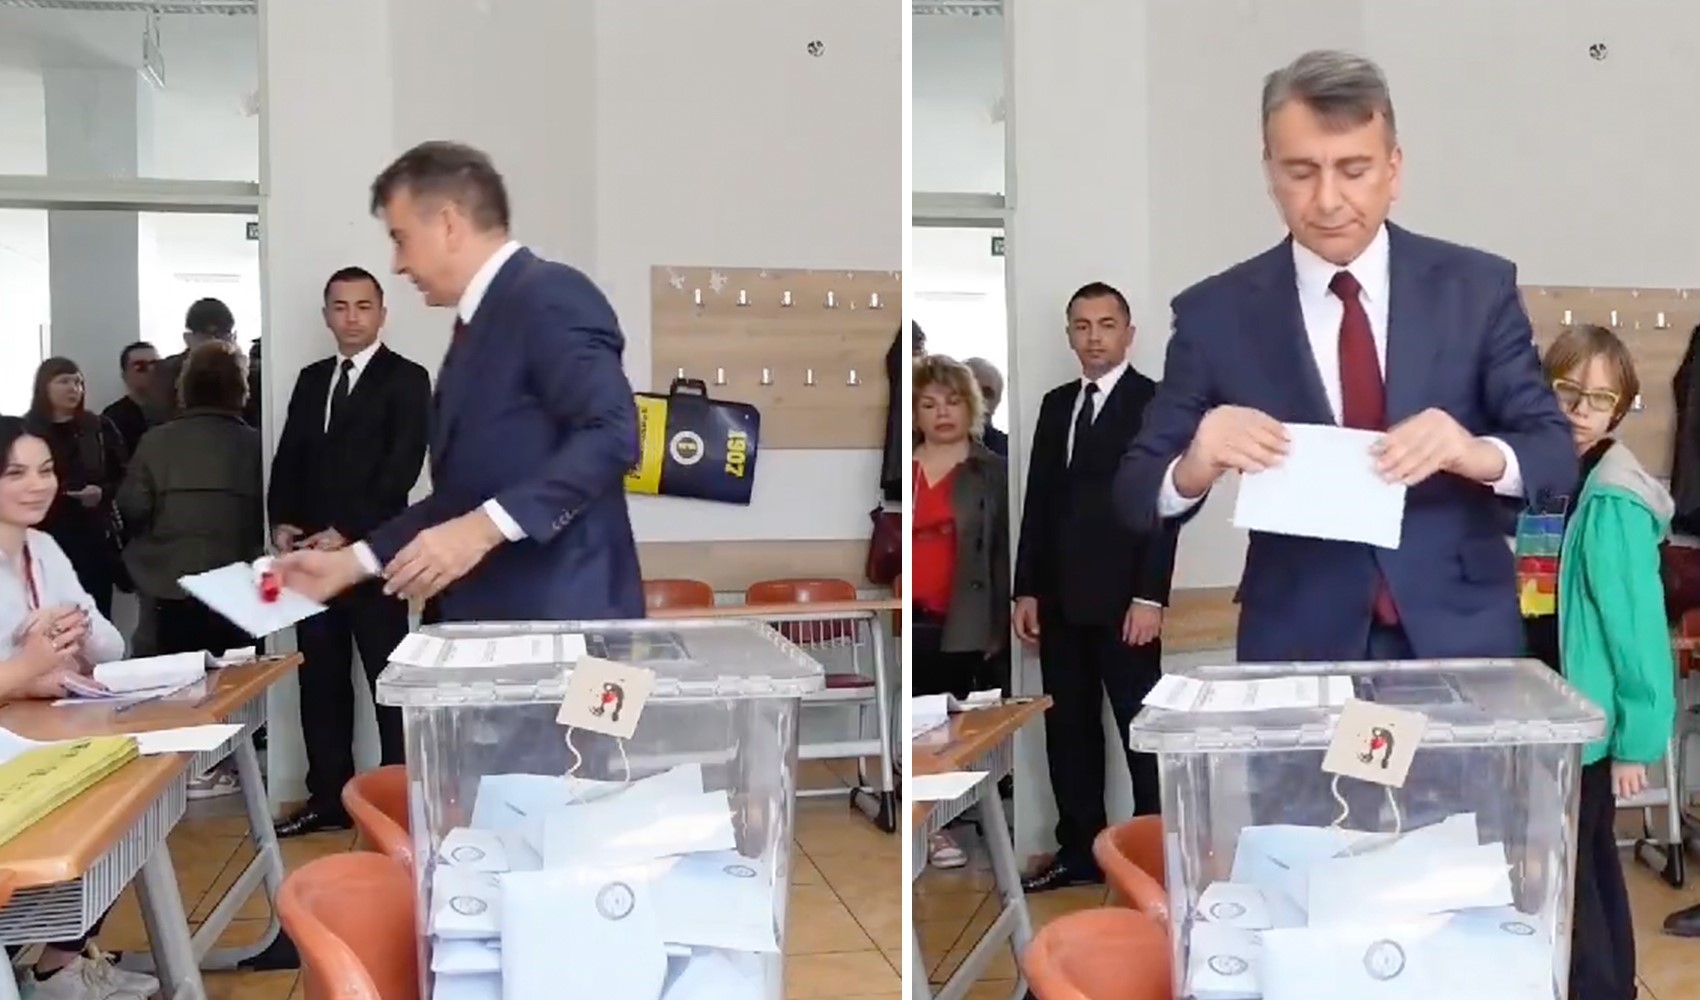 Azmi Karamahmutoğlu oy kullandığı zarfı görevliye verdi